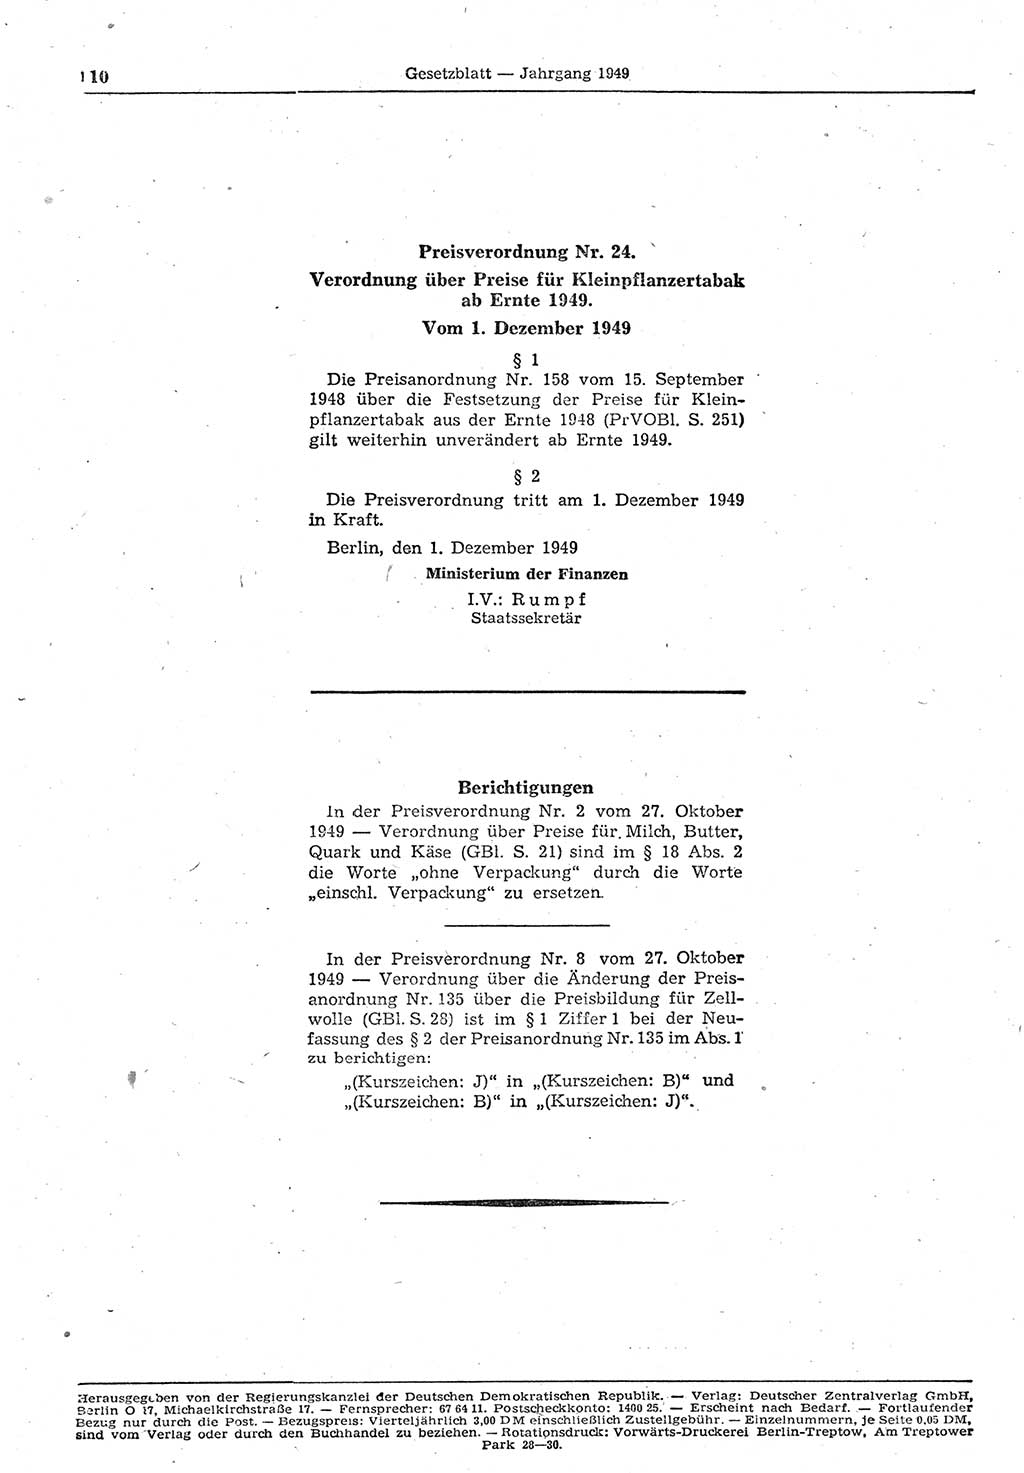 Gesetzblatt (GBl.) der Deutschen Demokratischen Republik (DDR) 1949, Seite 110 (GBl. DDR 1949, S. 110)